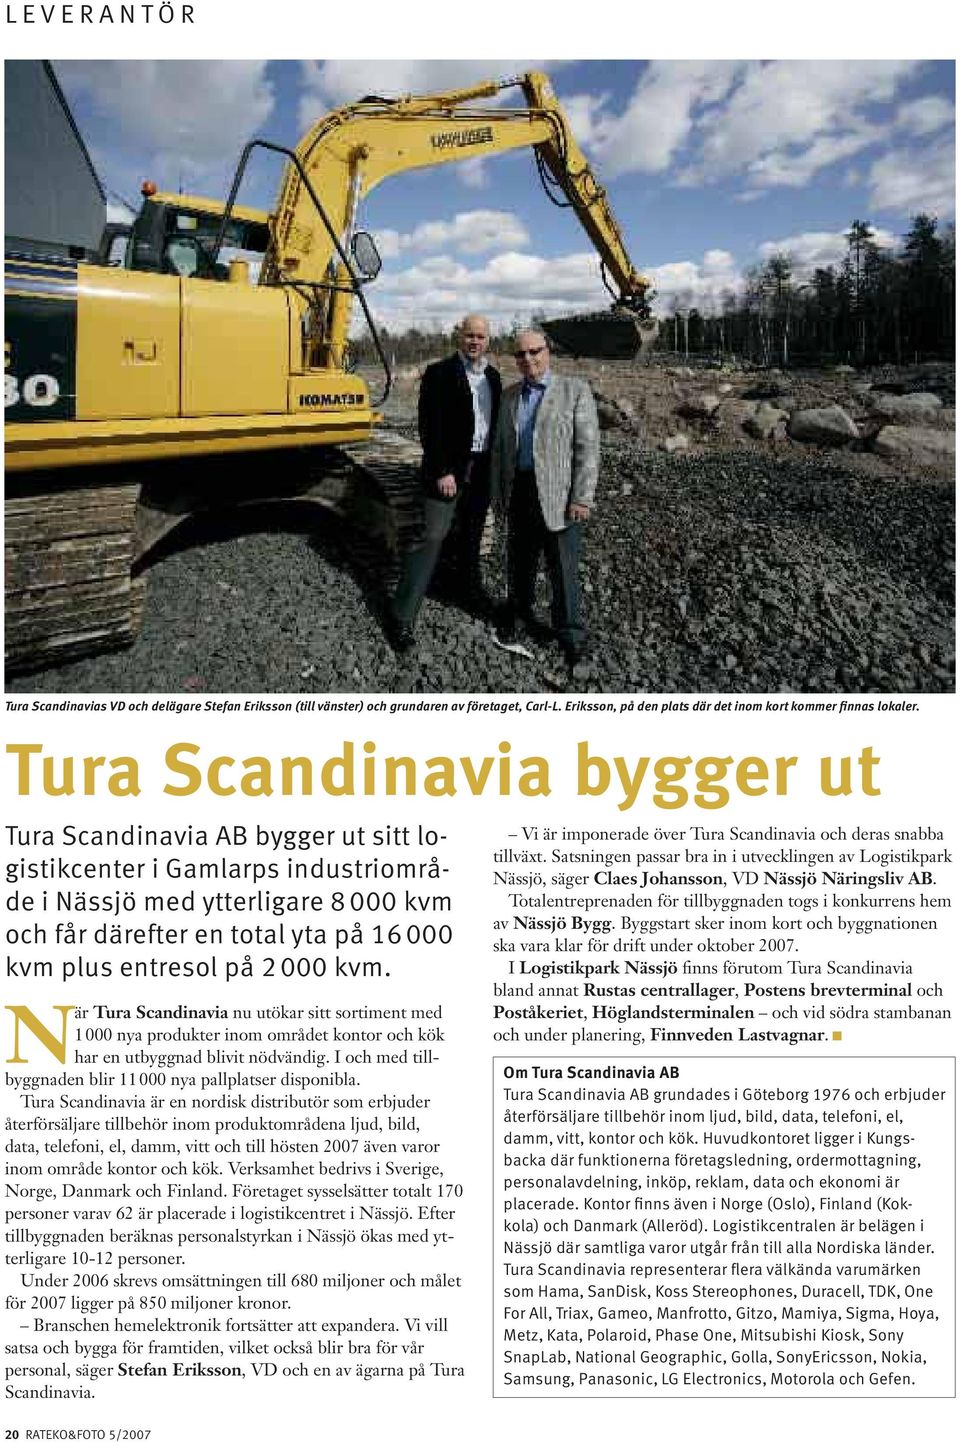 2 000 kvm. När Tura Scandinavia nu utökar sitt sortiment med 1 000 nya produkter inom området kontor och kök har en utbyggnad blivit nödvändig.